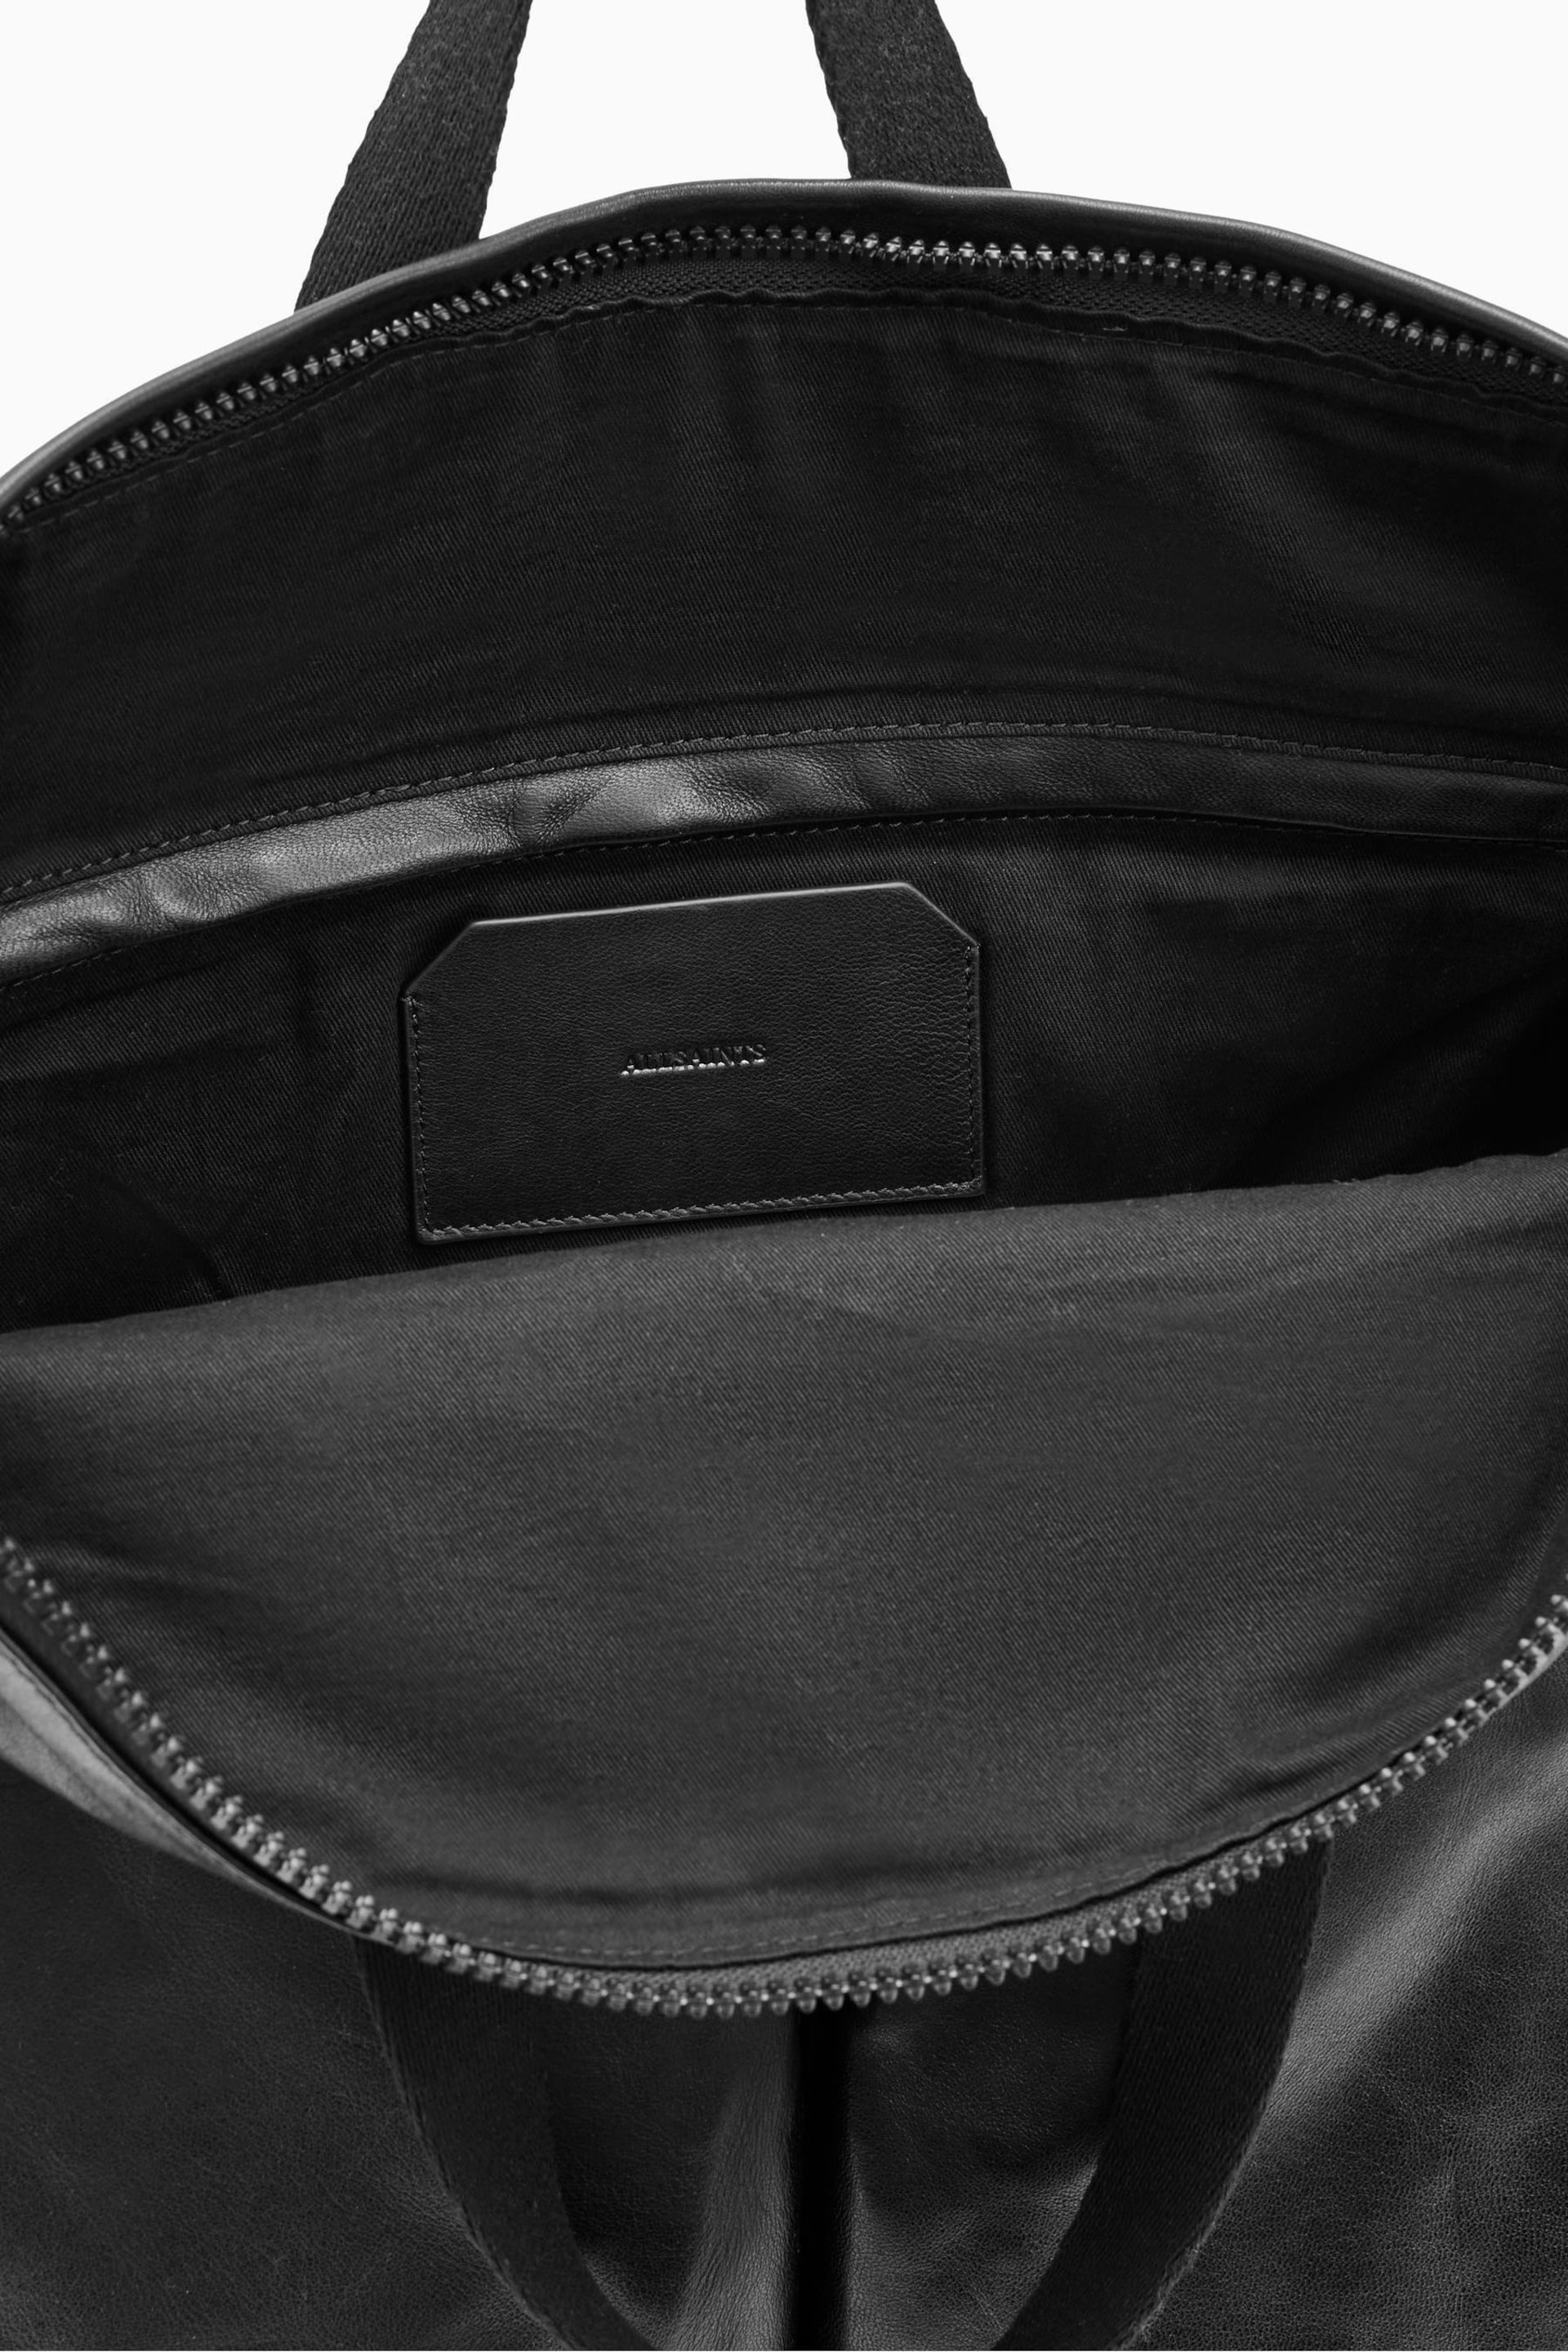 AllSaints Black Force Backpack - Image 5 of 7